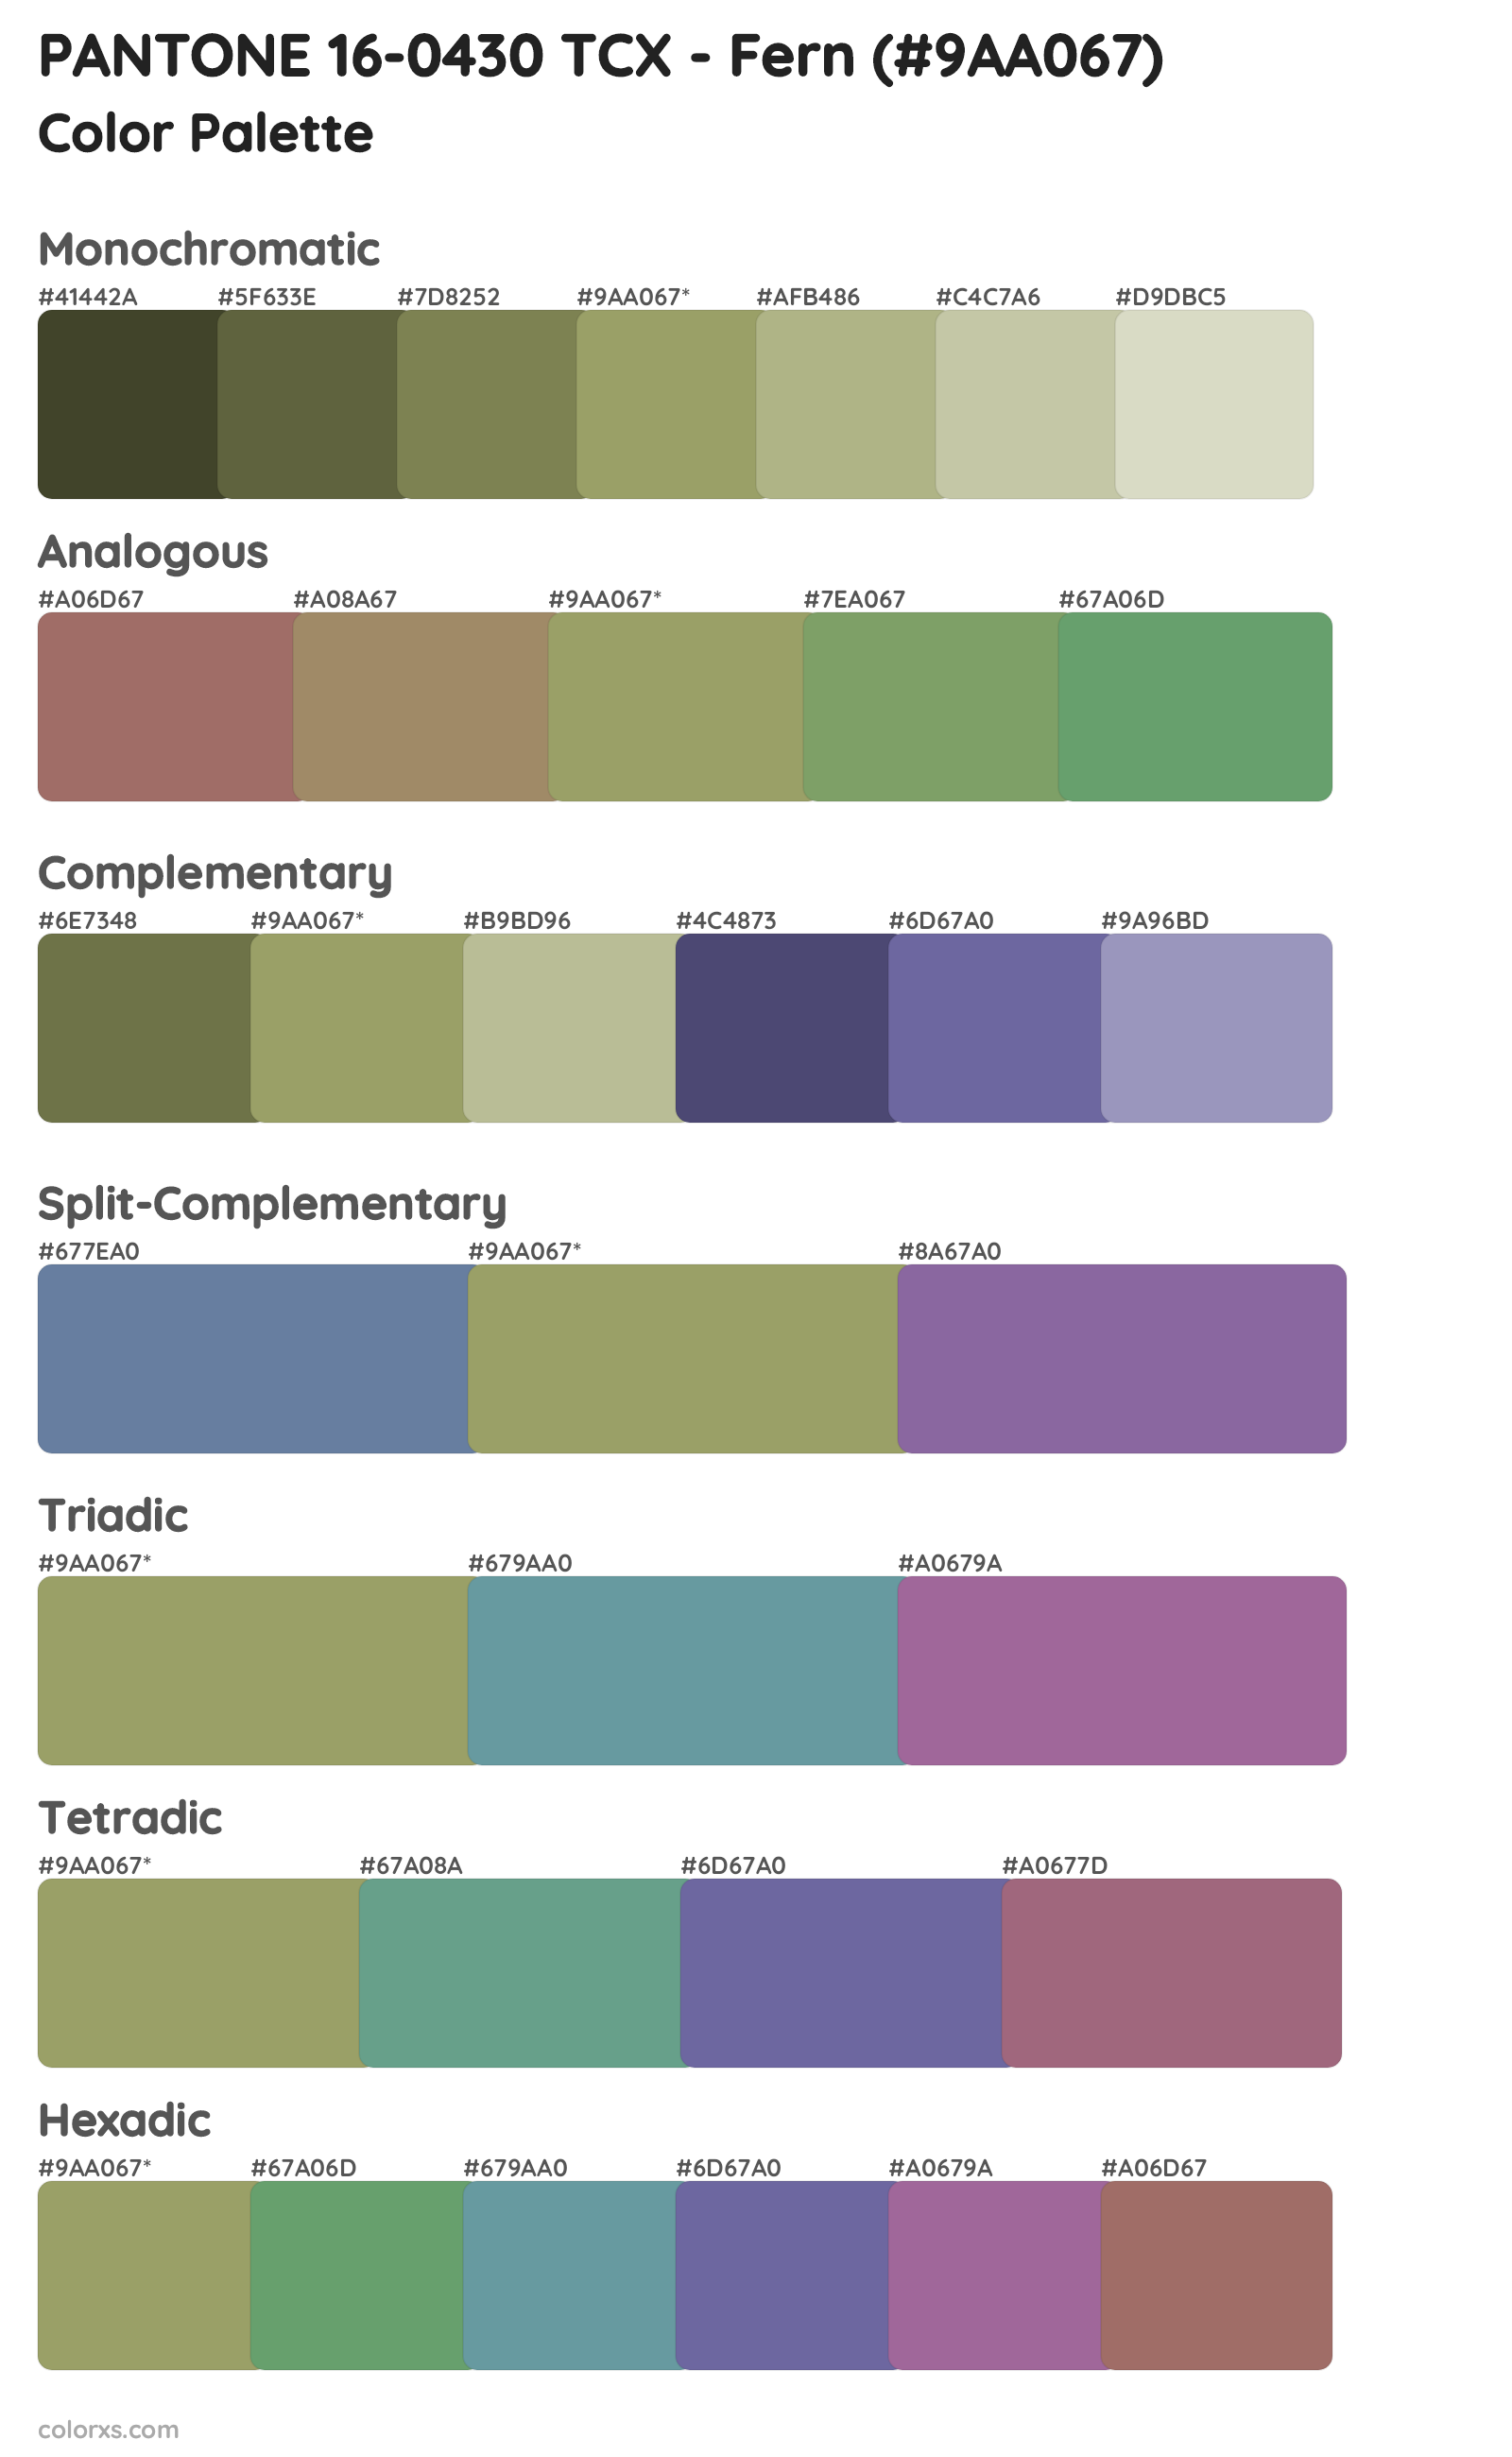 PANTONE 16-0430 TCX - Fern Color Scheme Palettes